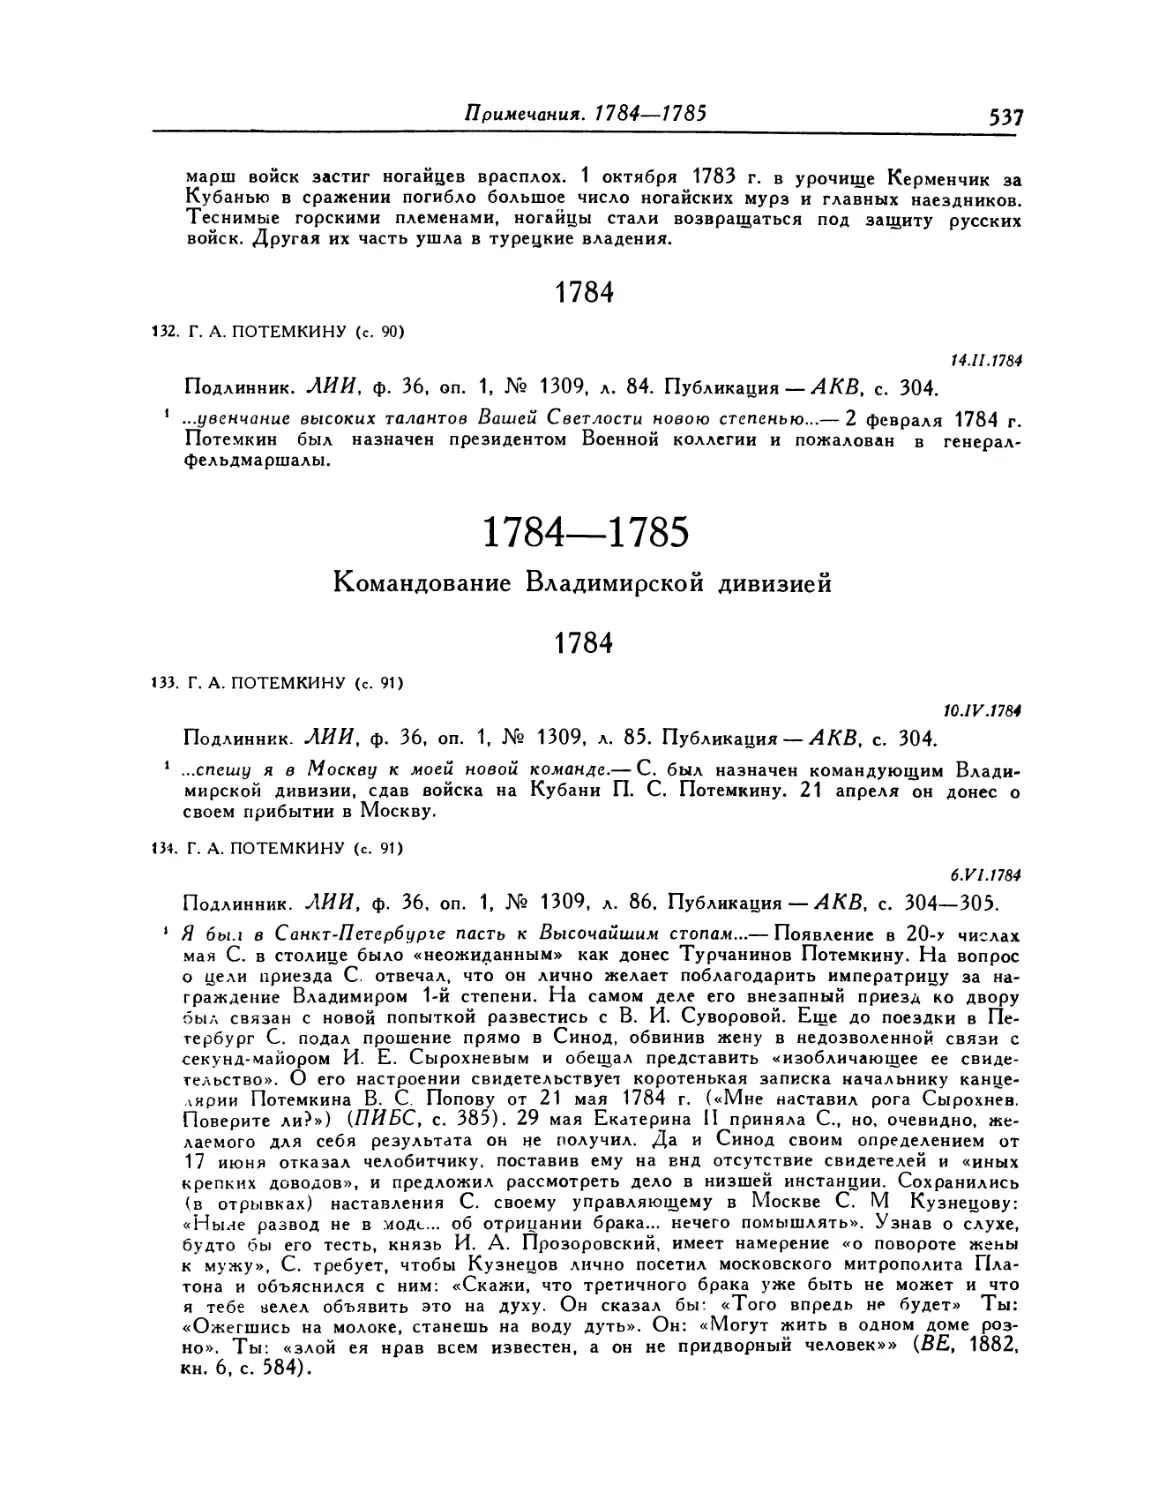 1784—1785. Командование Владимирской дивизией